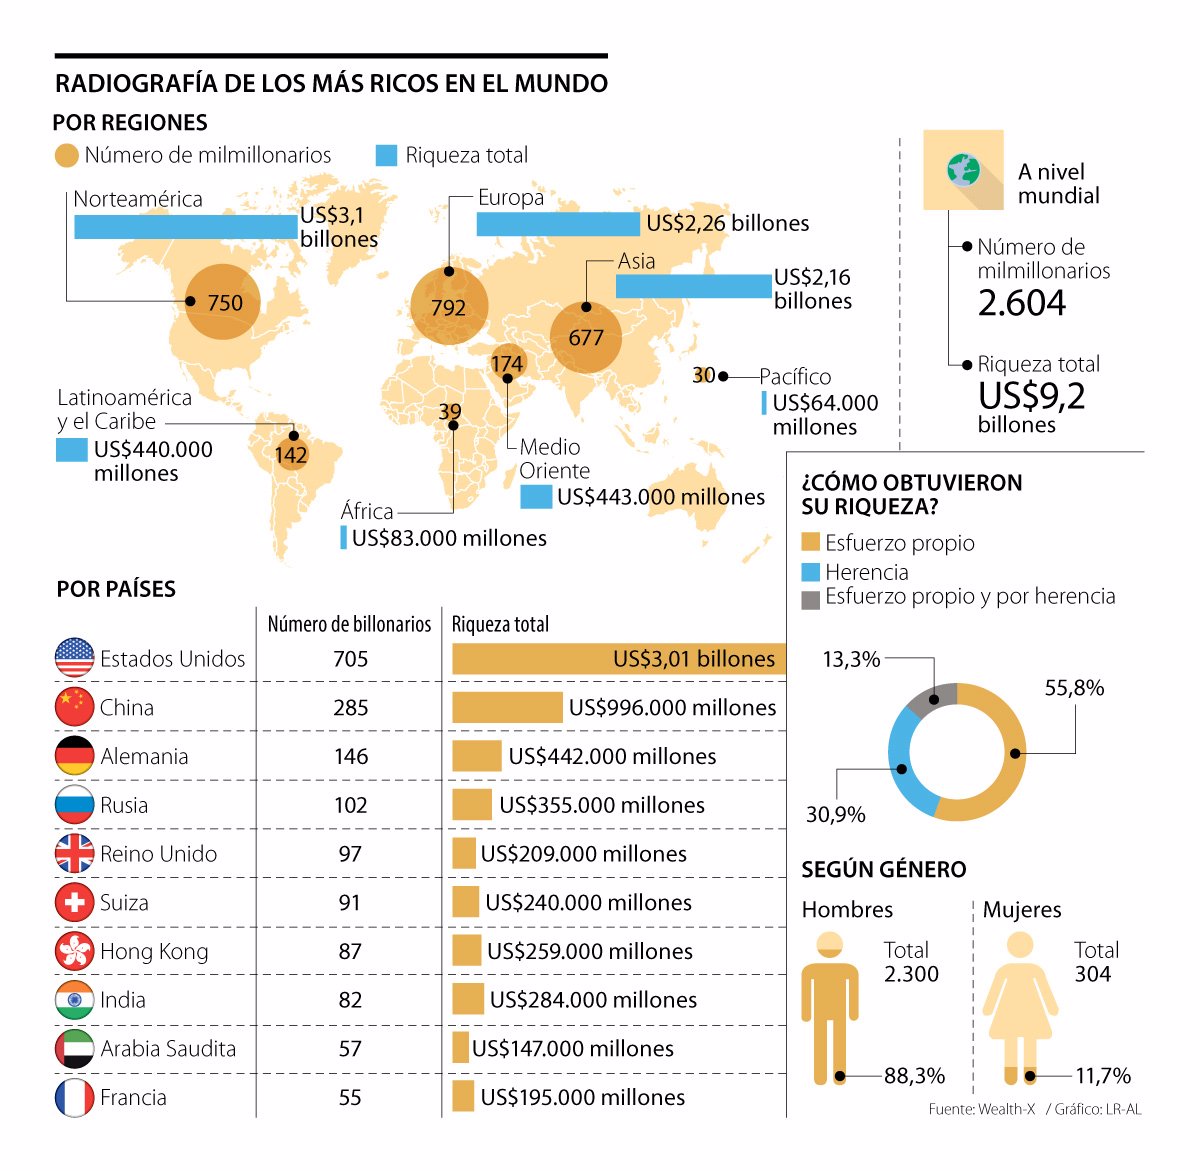 De los 2.604 multimillonarios que hay en el mundo, 5,5% está en Latinoamérica